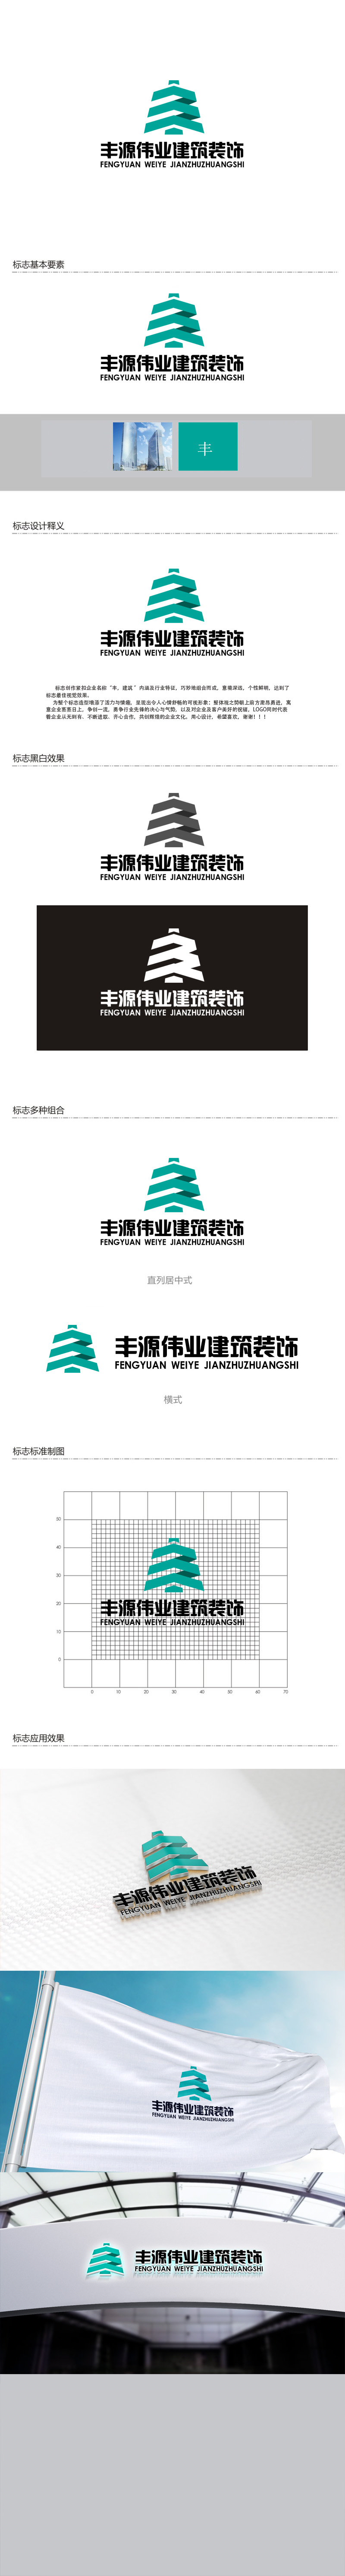 秦晓东的北京丰源伟业建筑装饰工程有限公司logo设计